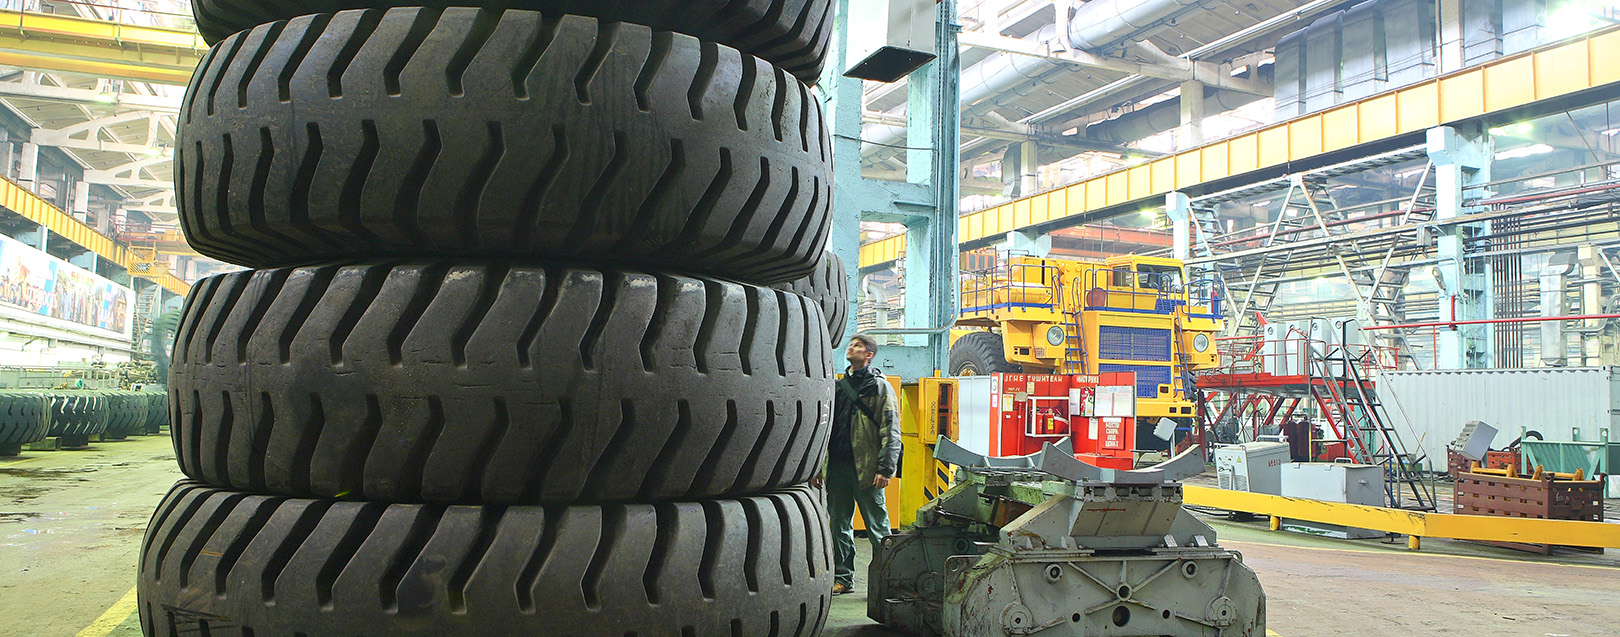 Apollo Tyres to double capacity at Chennai plant